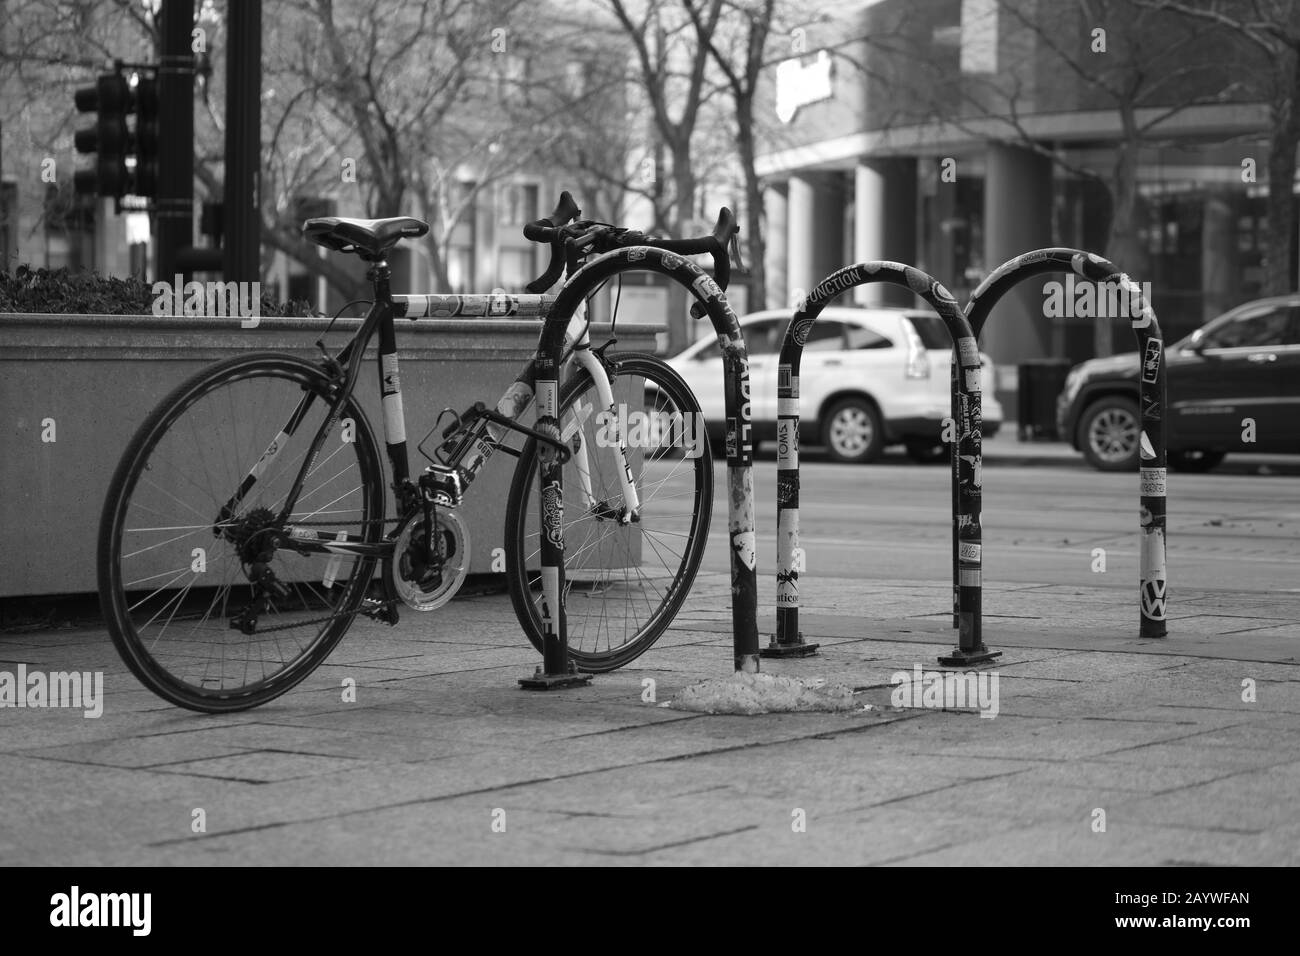 Fahrrad auf einem Fahrradträger in der Stadt gesichert. Stockfoto